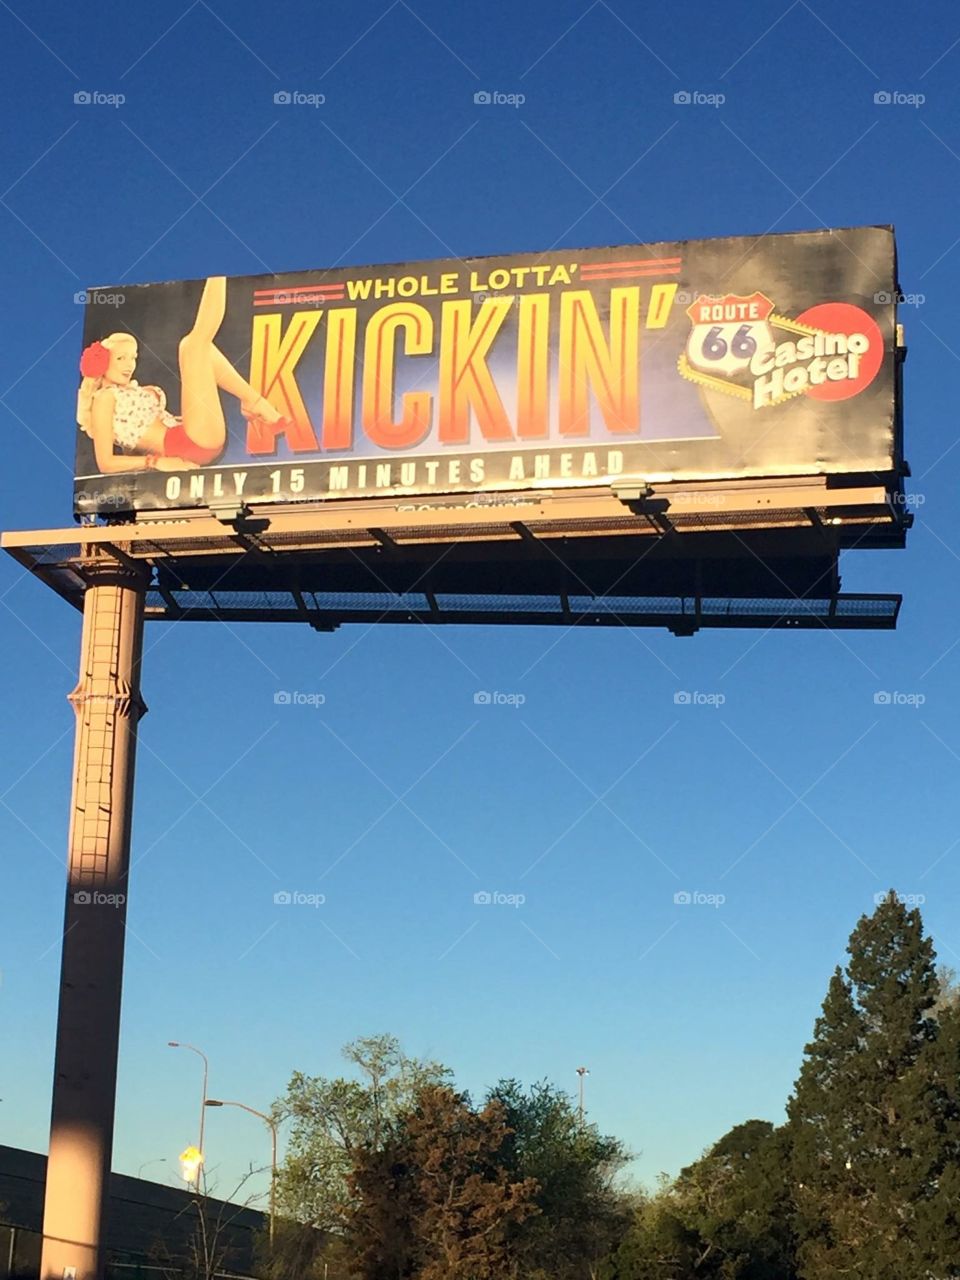 Route 66 casino billboard. 